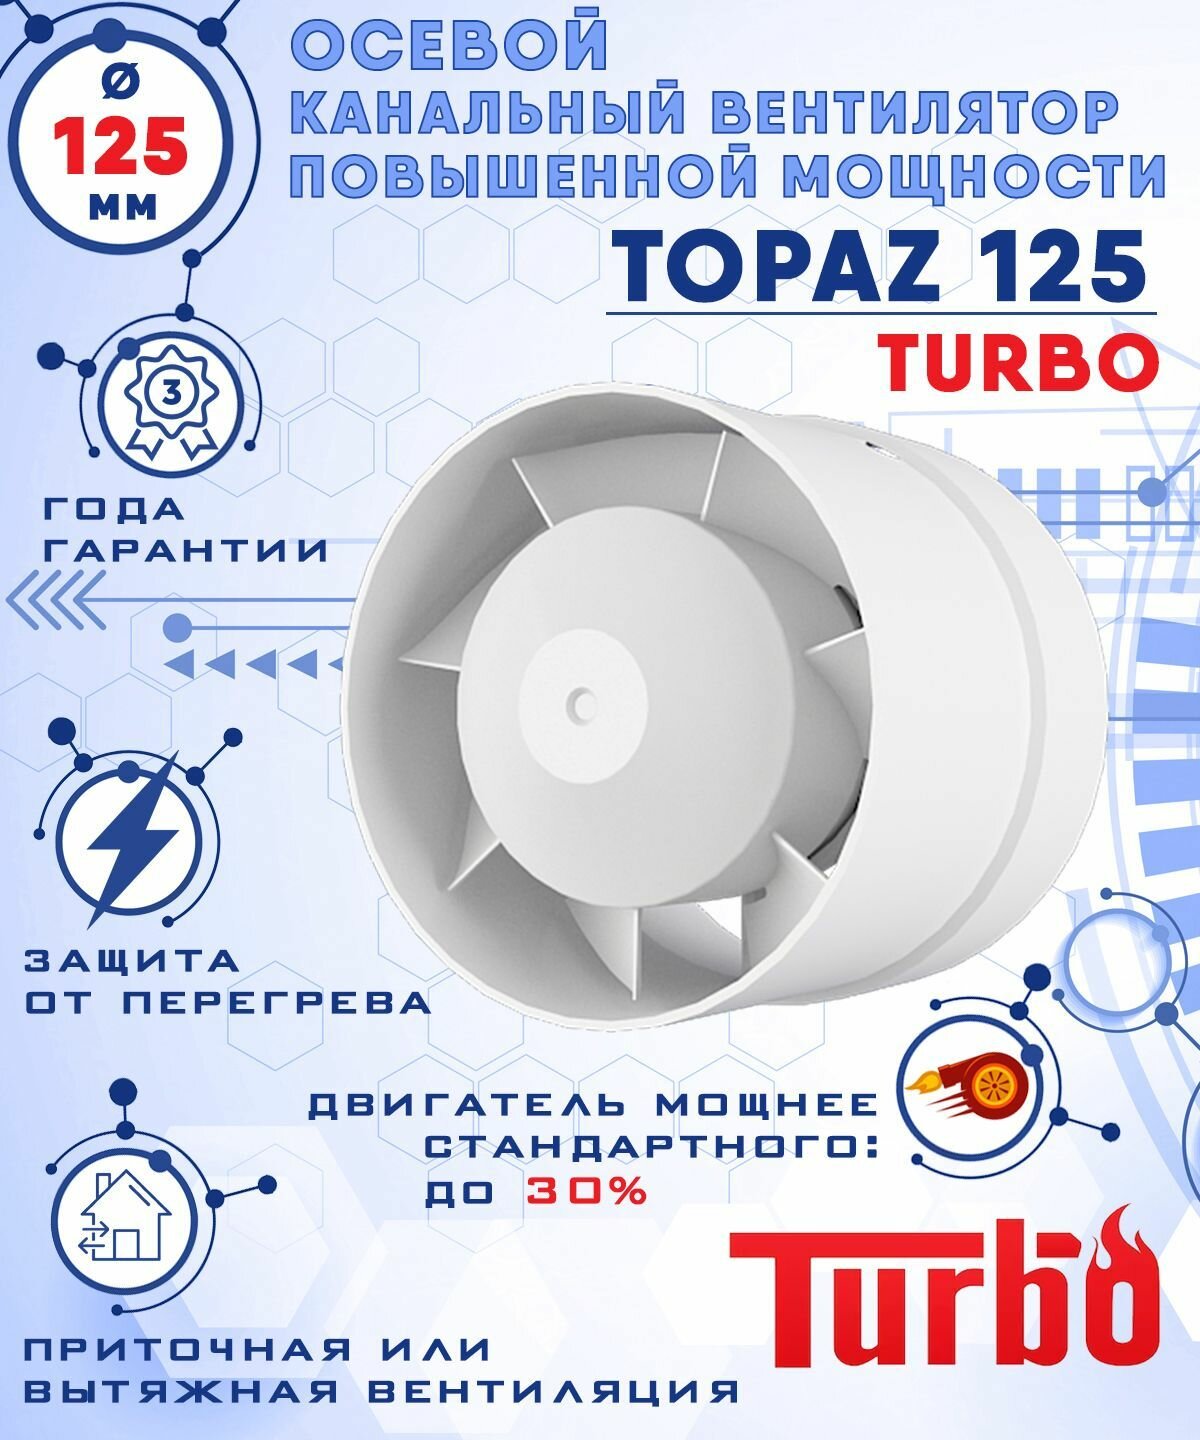 TOPAZ 125 TURBO осевой канальный 243 куб. м/ч. вентилятор 23 Вт повышенной мощности 243 куб. м/ч. диаметр 125 мм ZERNBERG